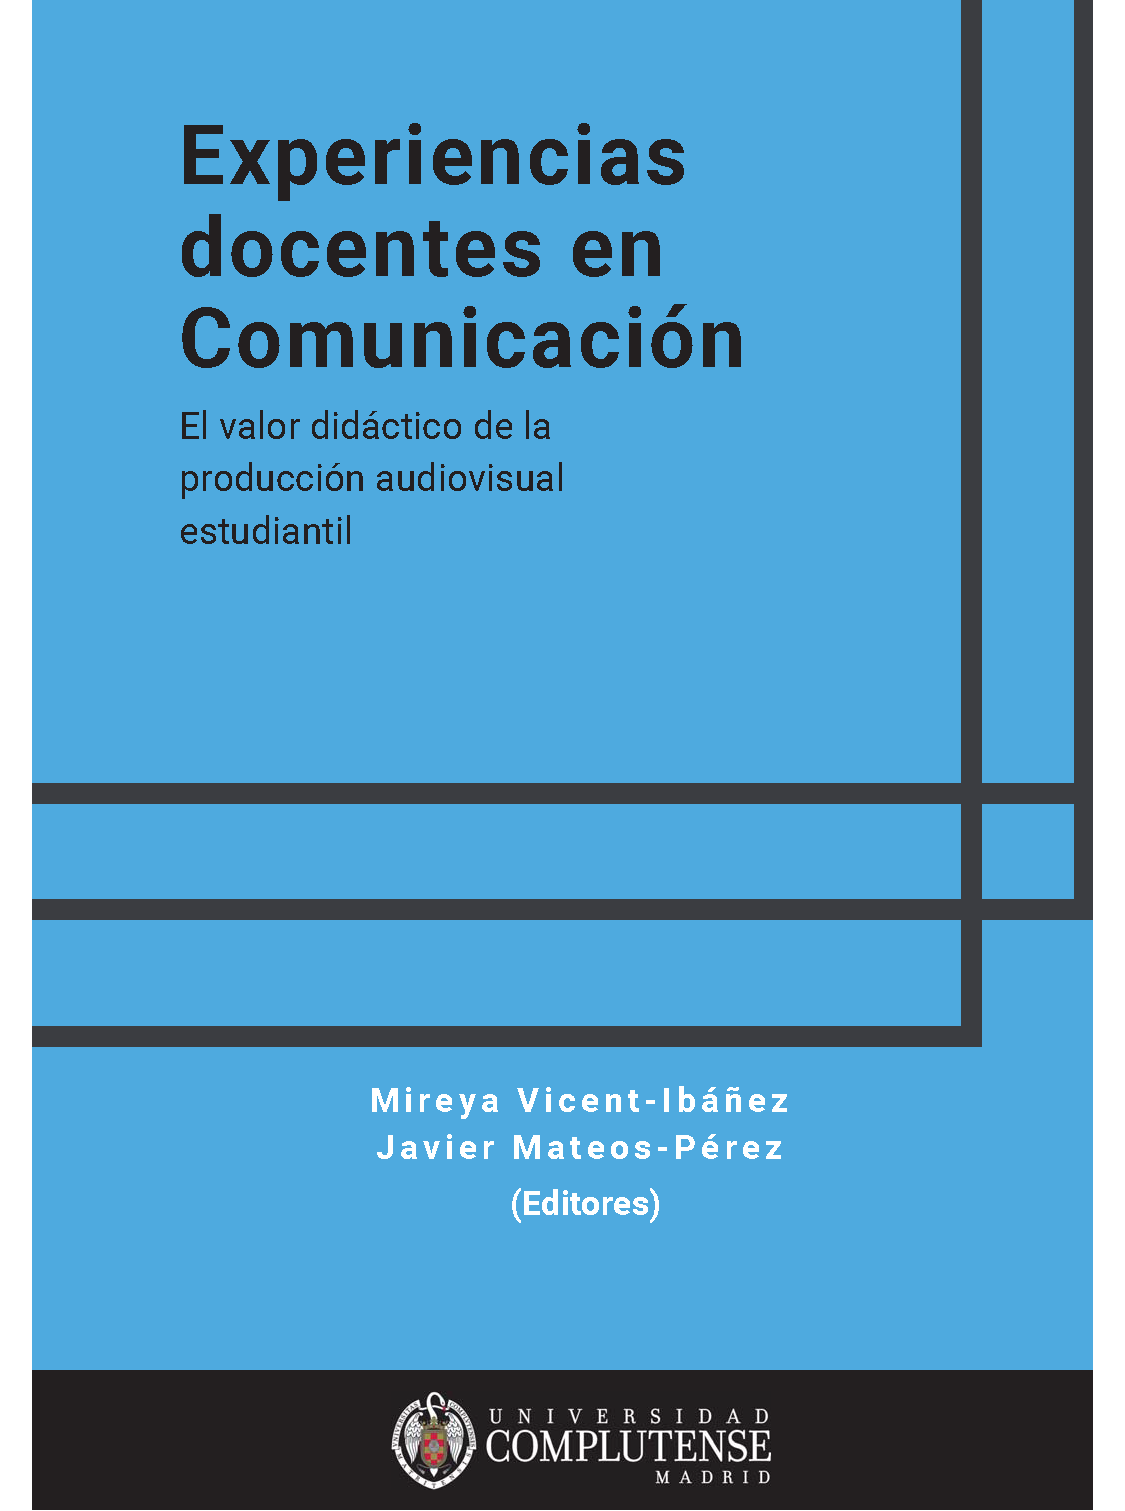 Imagen de portada del libro Experiencias docentes en Comunicación